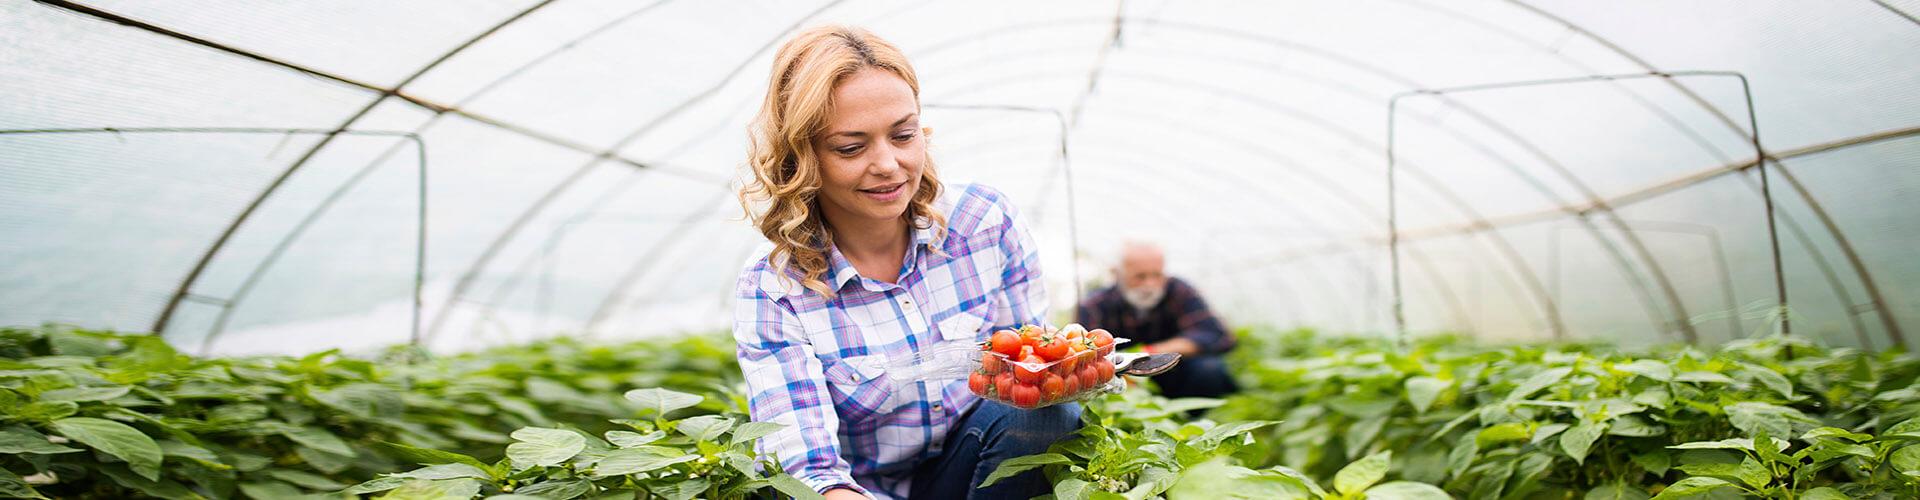 SAECA - Dona rossa agricultora amb camisa de quadres blaus, somrient mentre recull vegetals en un hivernacle